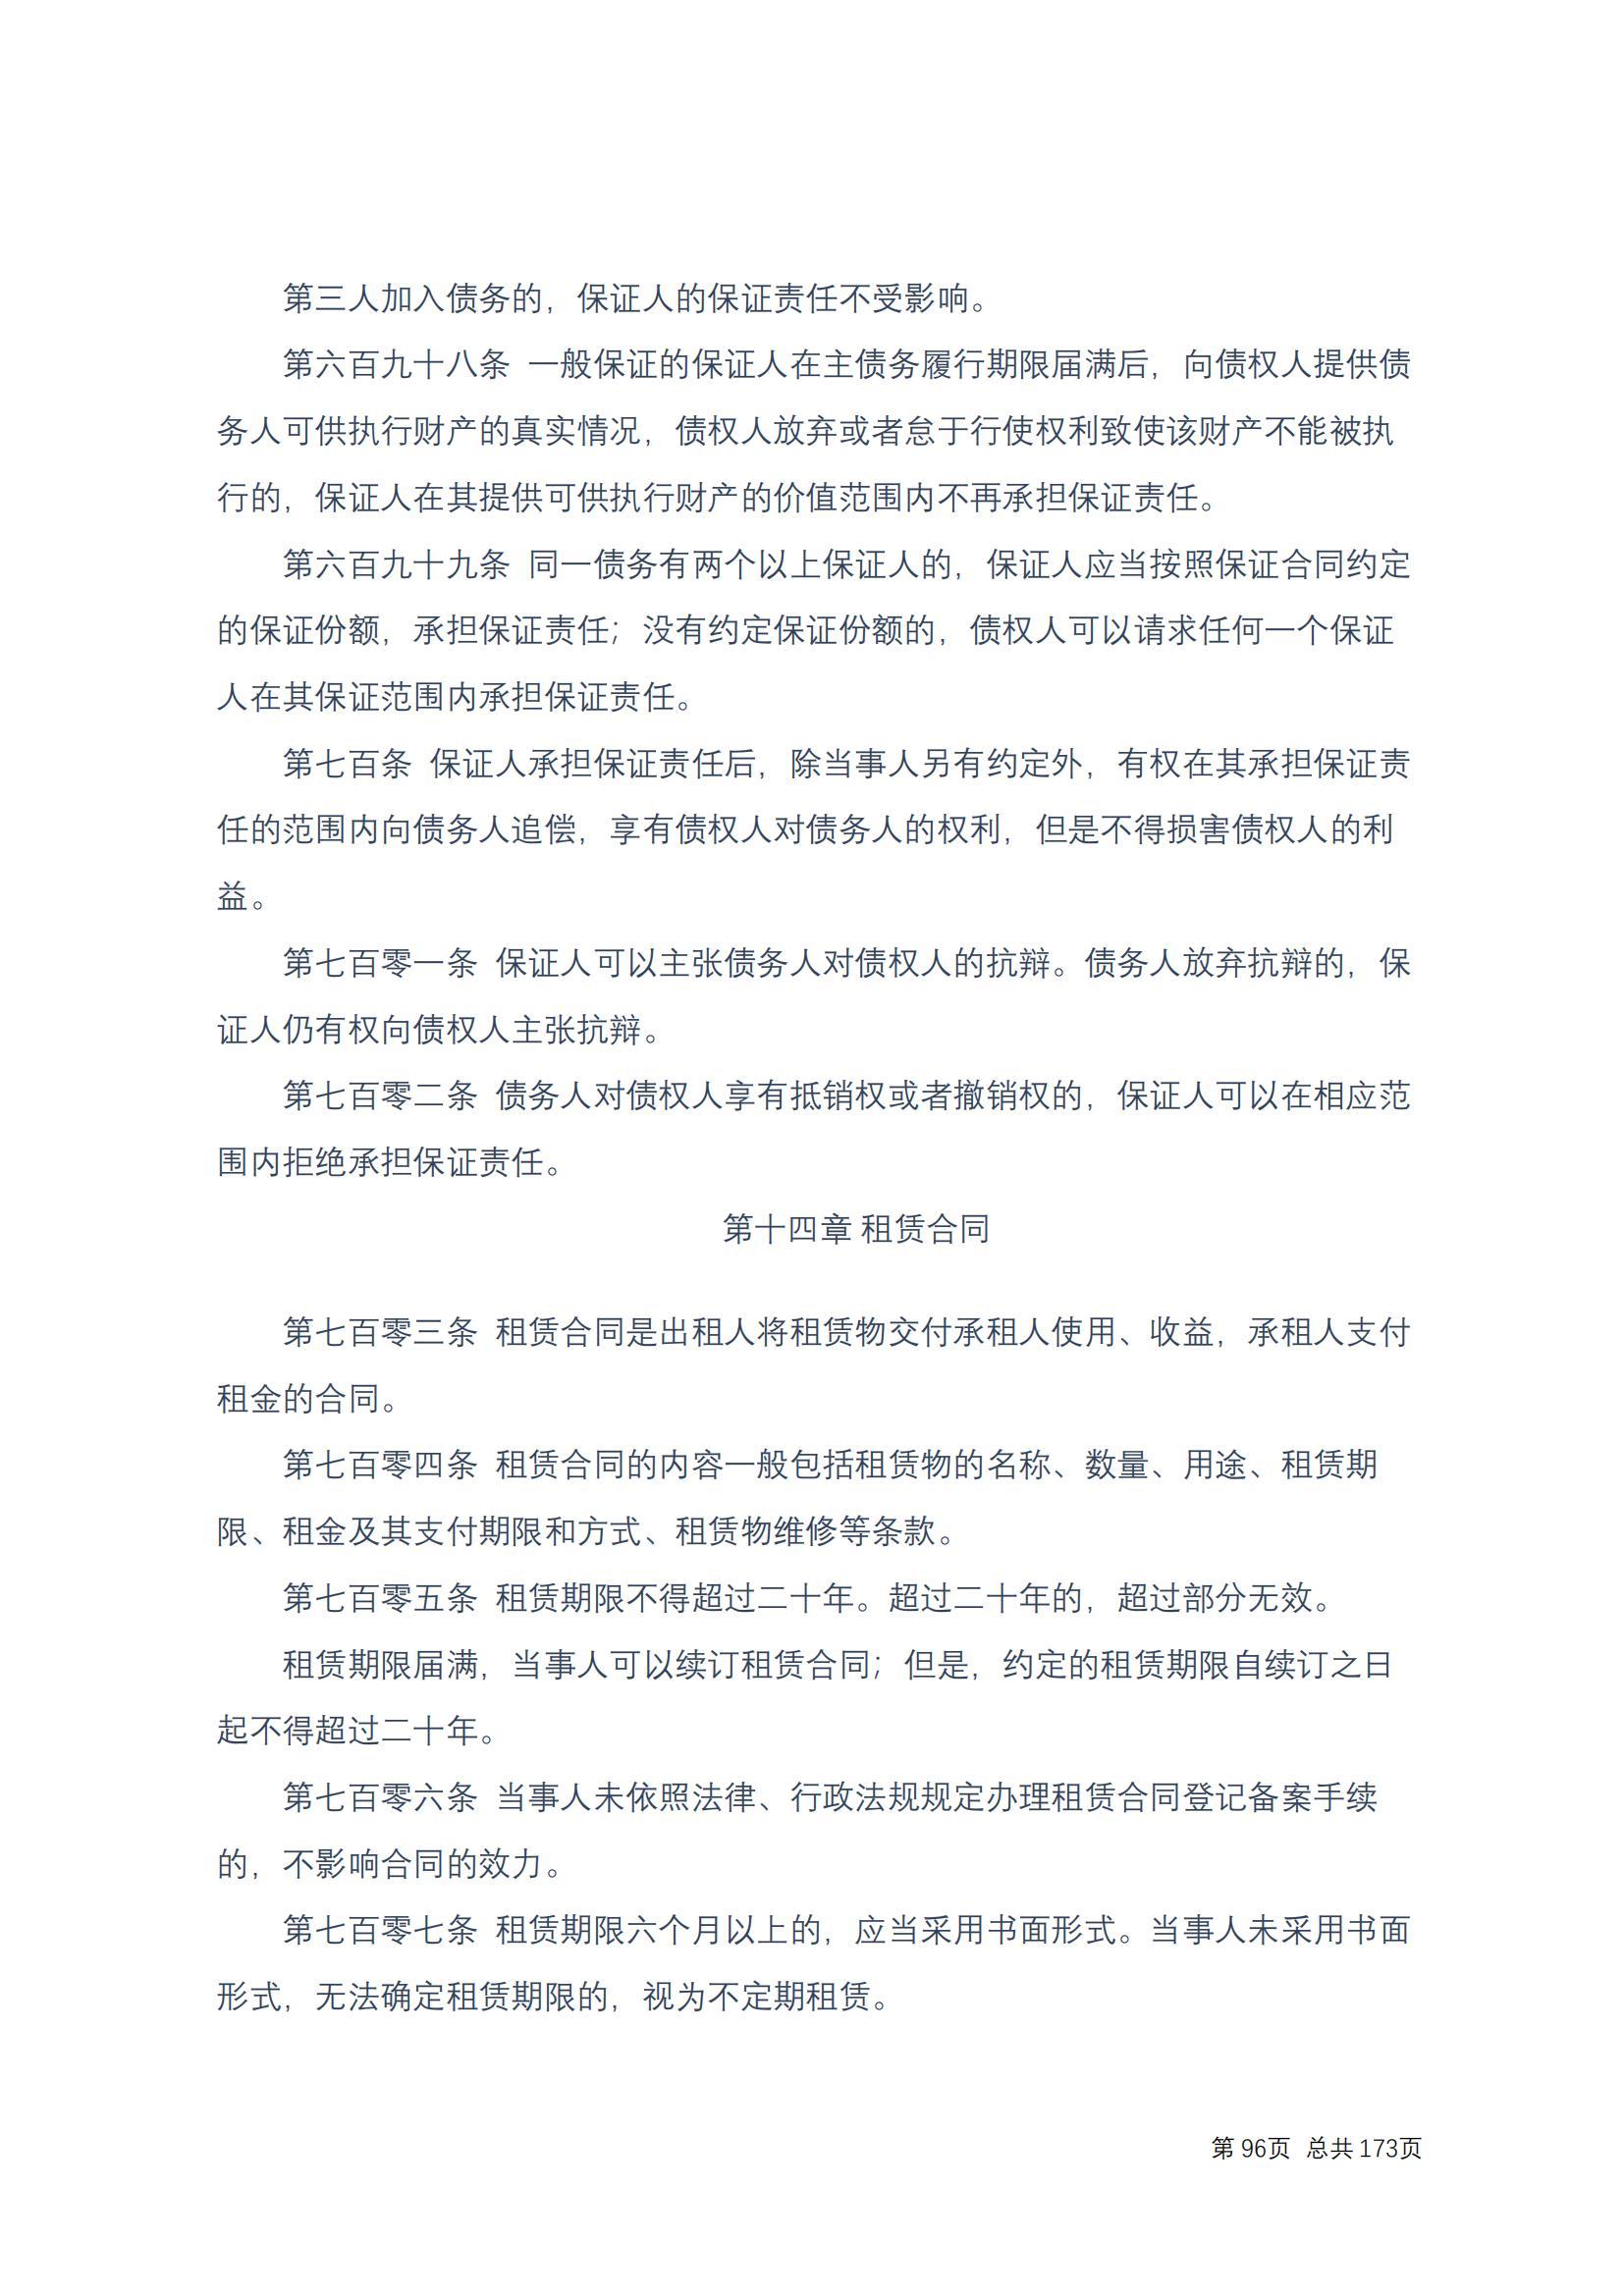 中华人民共和国民法典 修改过_95